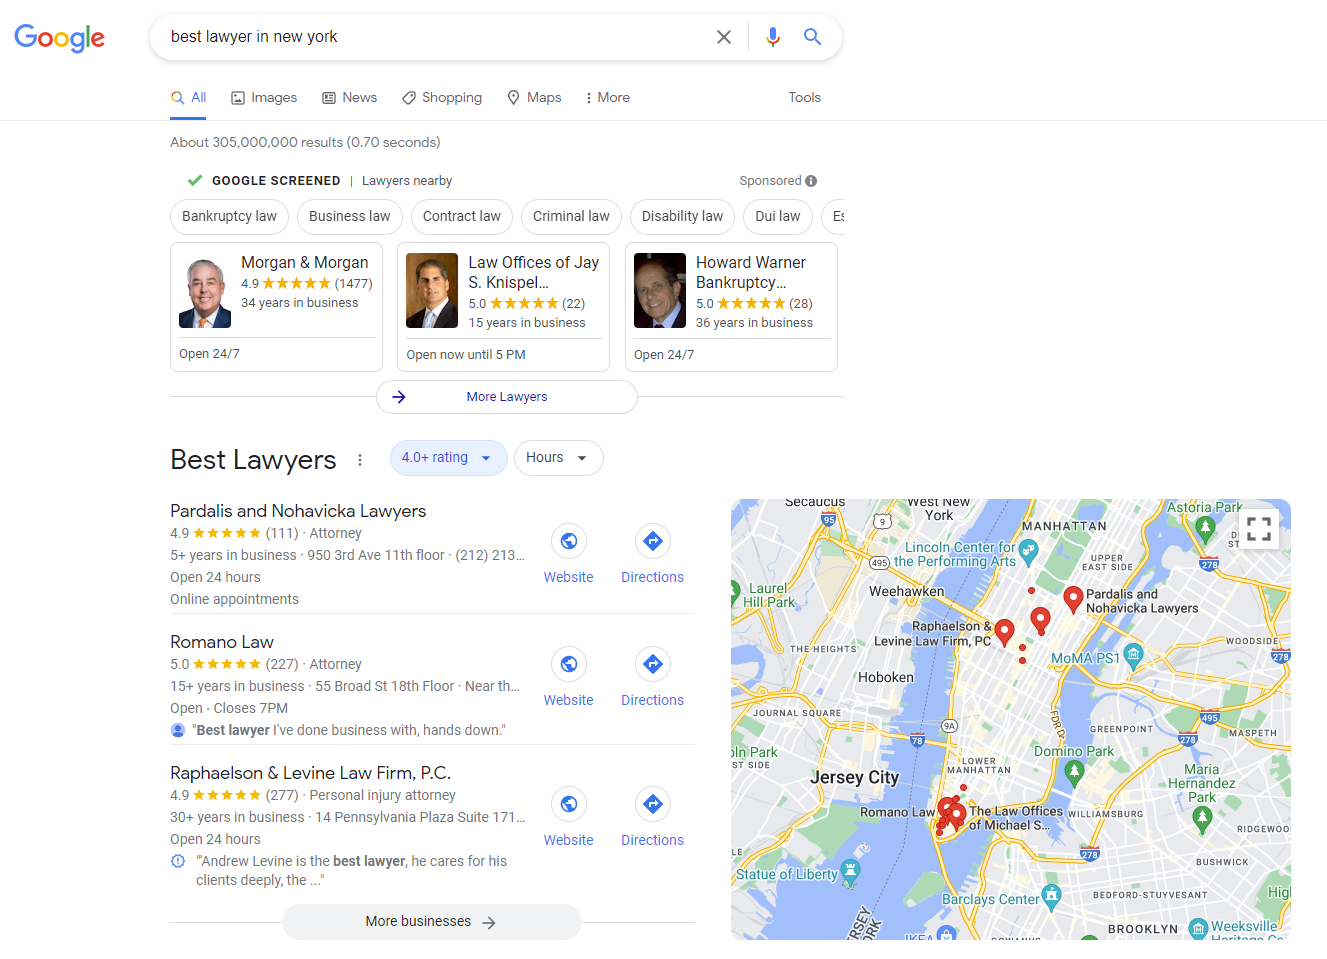 Tangkapan layar dari pencarian Google untuk [best lawyer in new york]menampilkan cantuman bisnis dalam fitur khusus seperti Paket Lokal